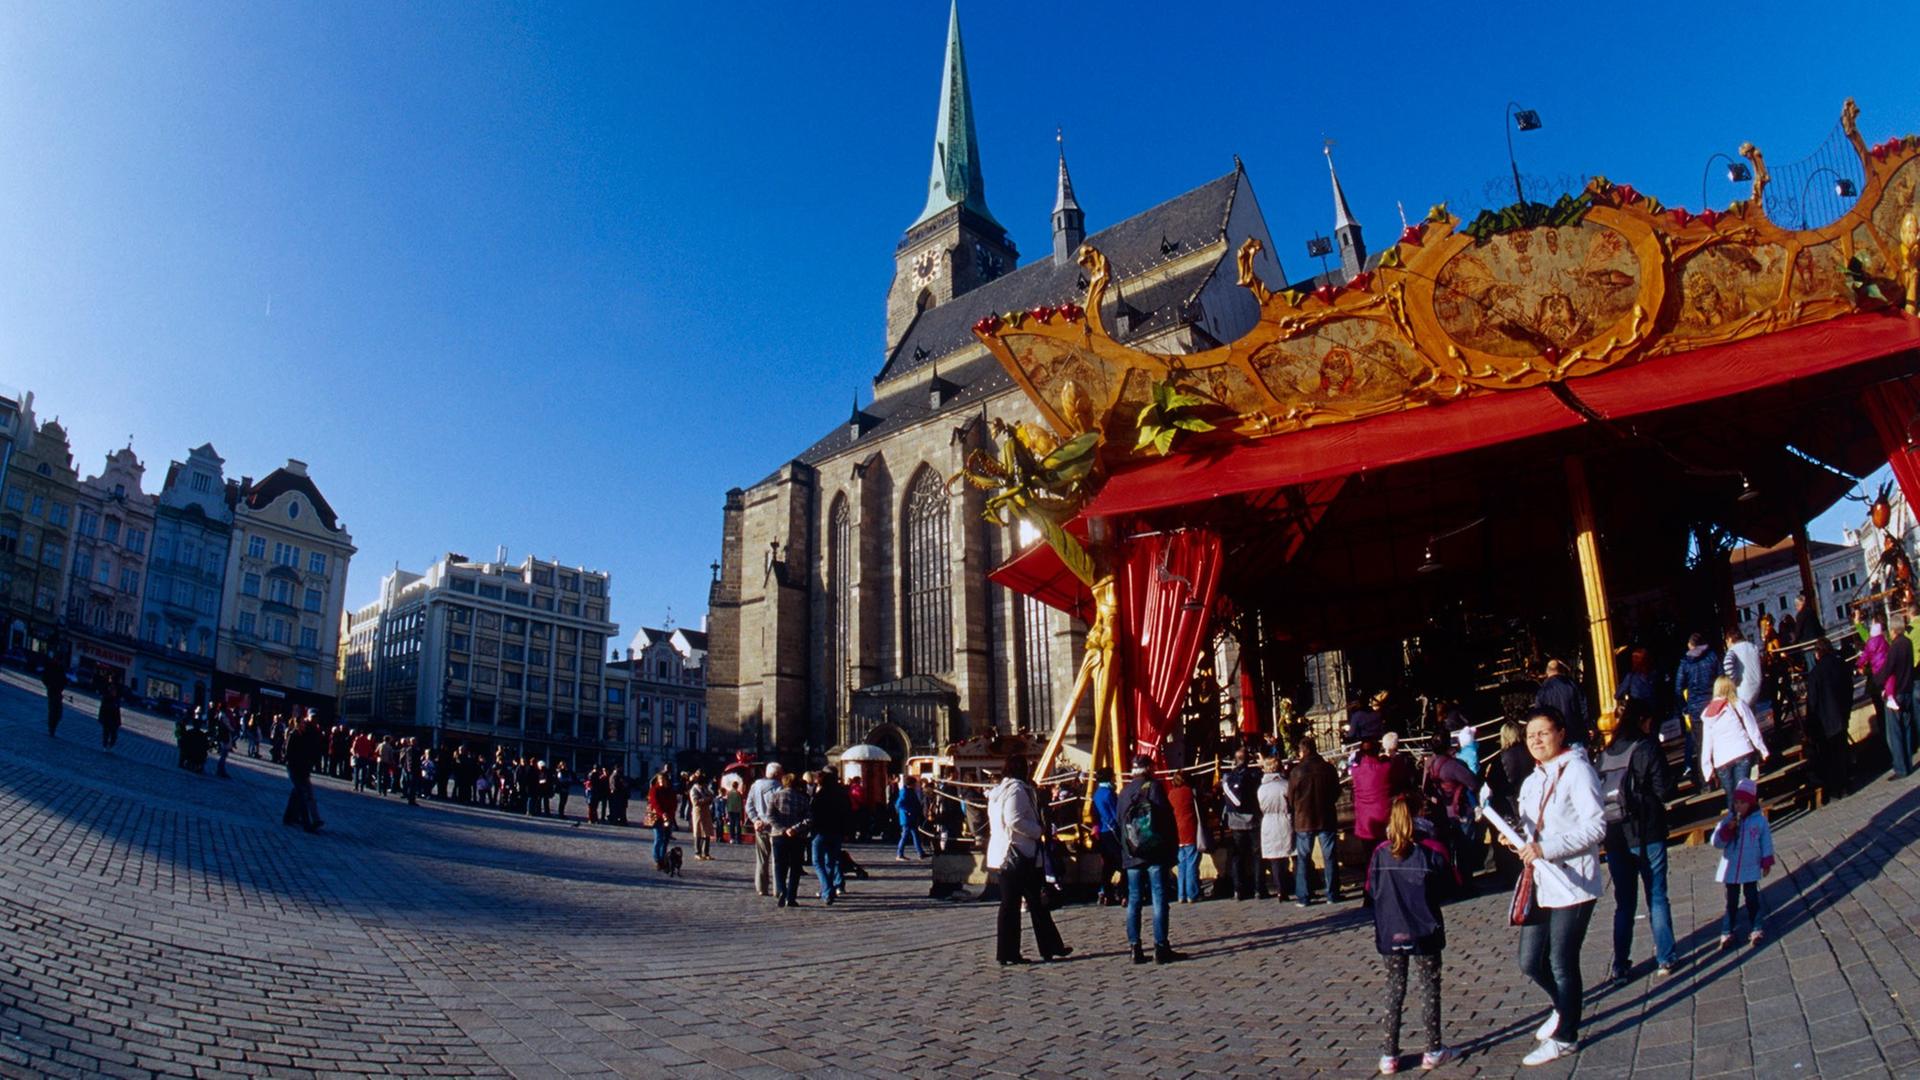 Das französische Karussell "Le Manège Carré Senart" steht am 25.11.2014 auf dem Platz der Republik neben der St.-Bartholomäus-Kathedrale in Pilsen, Tschechien, der Europäischen Kulturhauptstadt 2015.